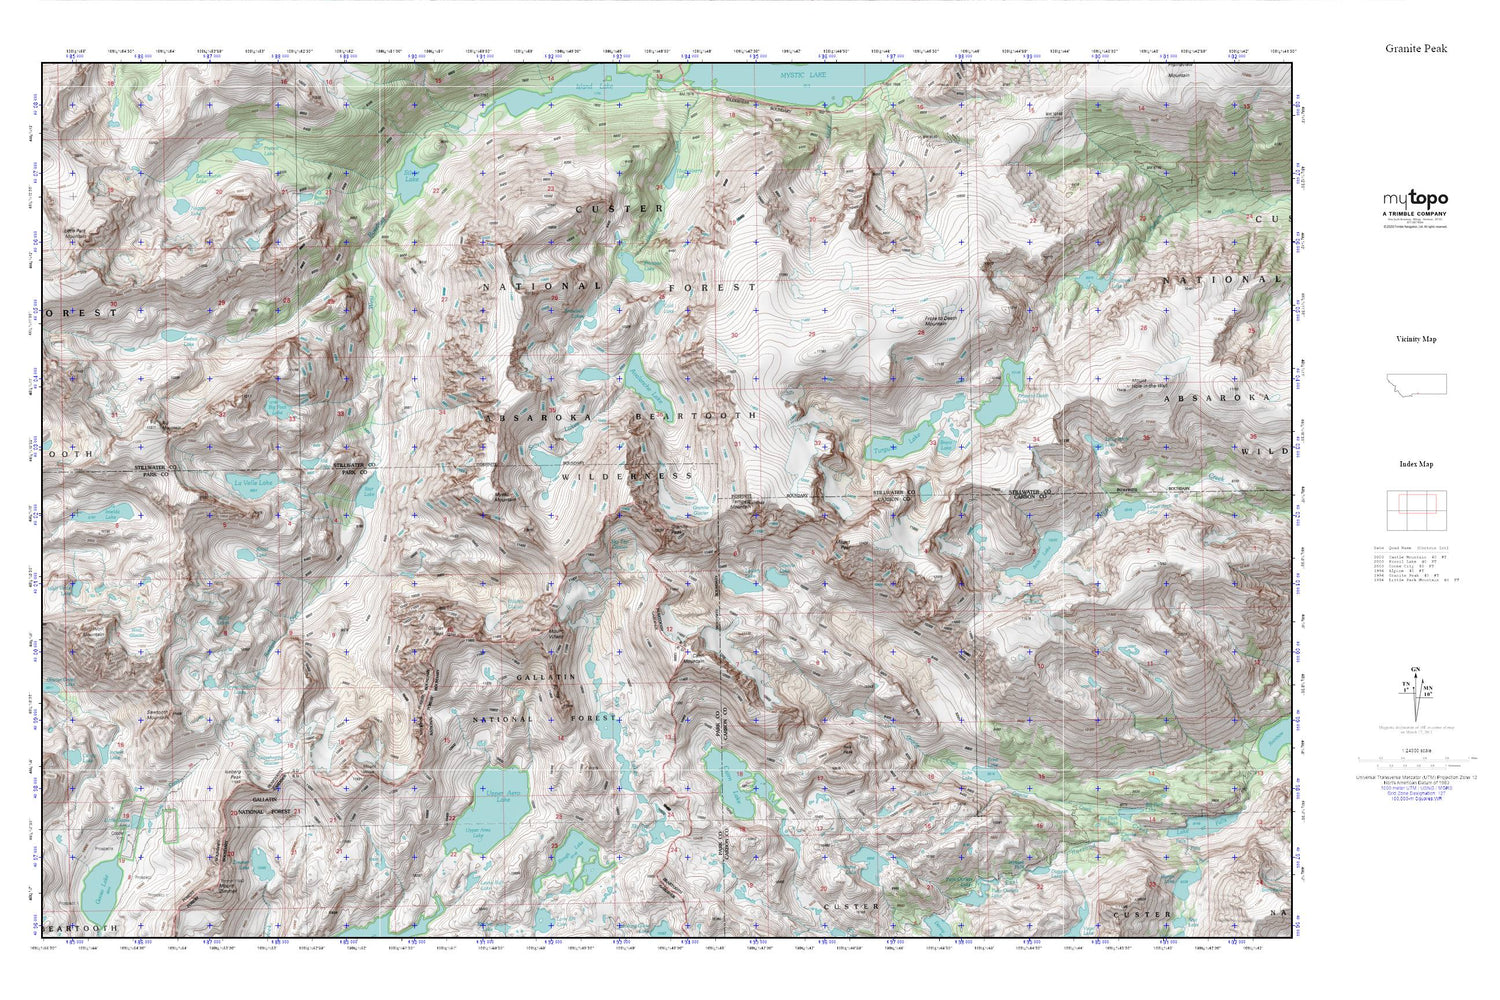 Granite Peak MyTopo Explorer Series Map Image